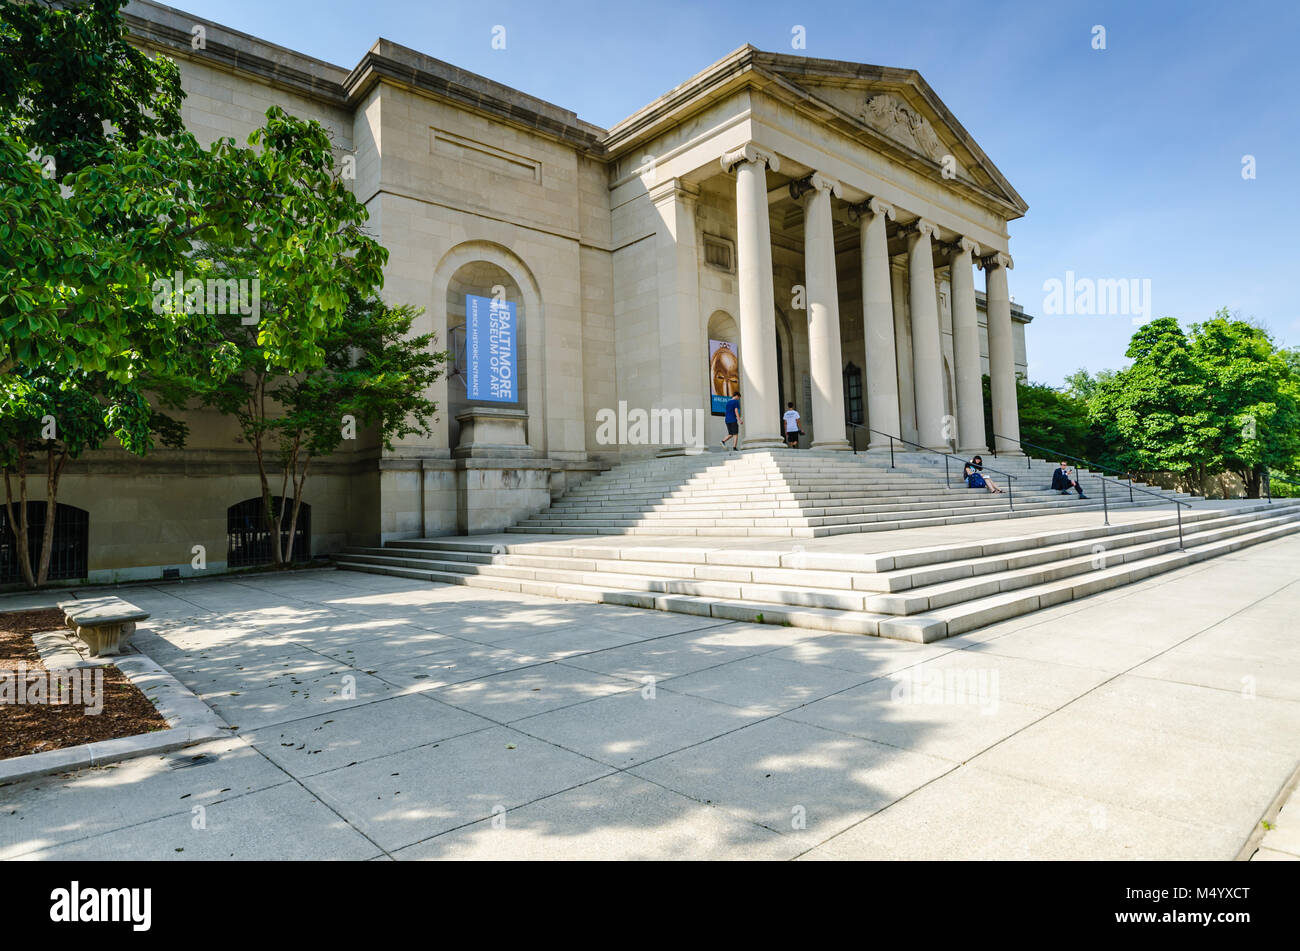 Das Baltimore Museum of Art, in Baltimore, Maryland, USA, ist ein Kunstmuseum, das 1914 gegründet wurde. Stockfoto